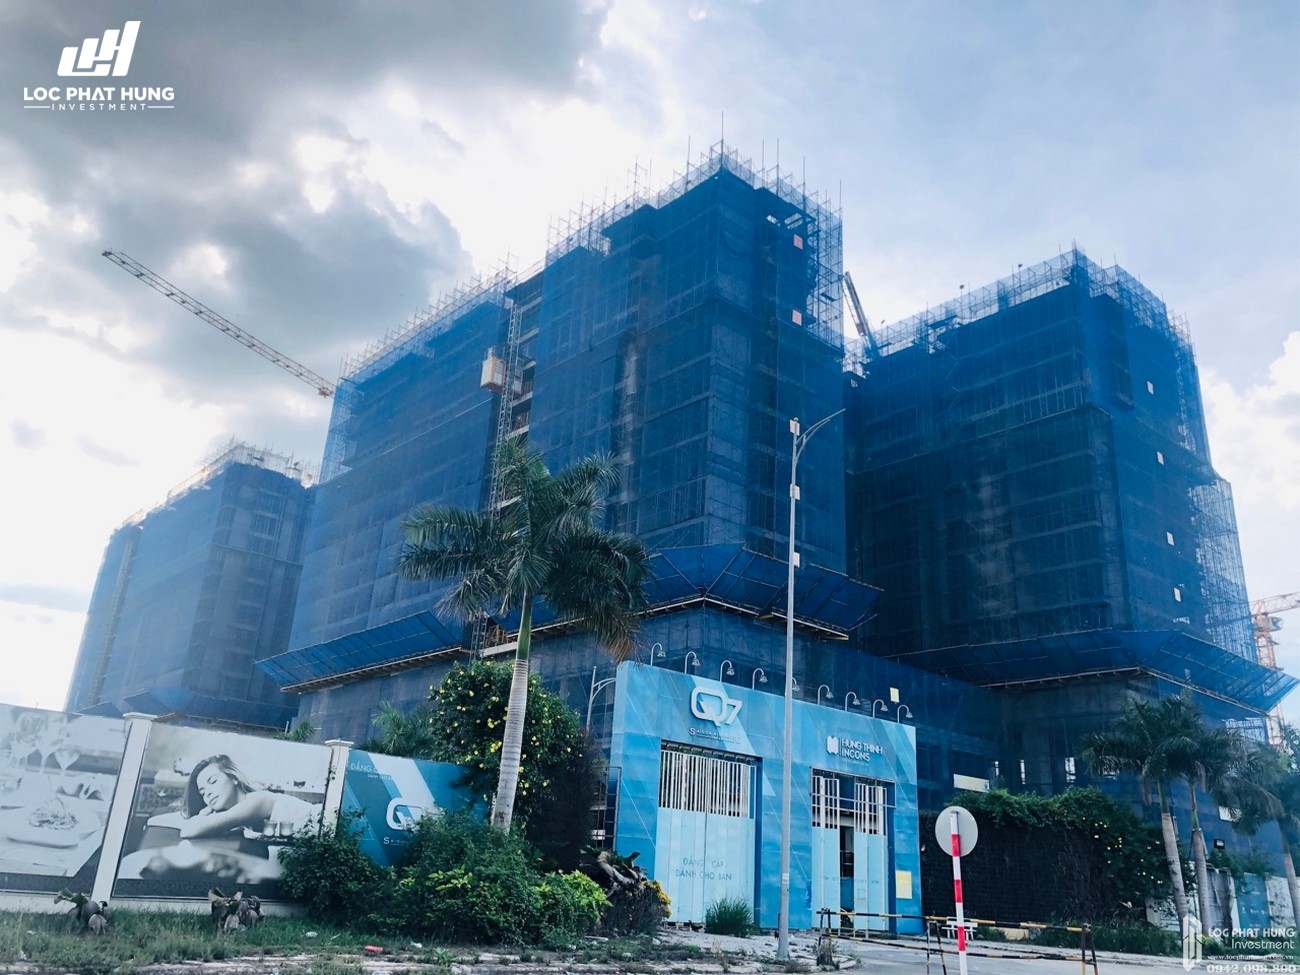 Tiến độ xây dựng dự án căn hộ Q7 Sài Gòn Riverside Complex 07/2020